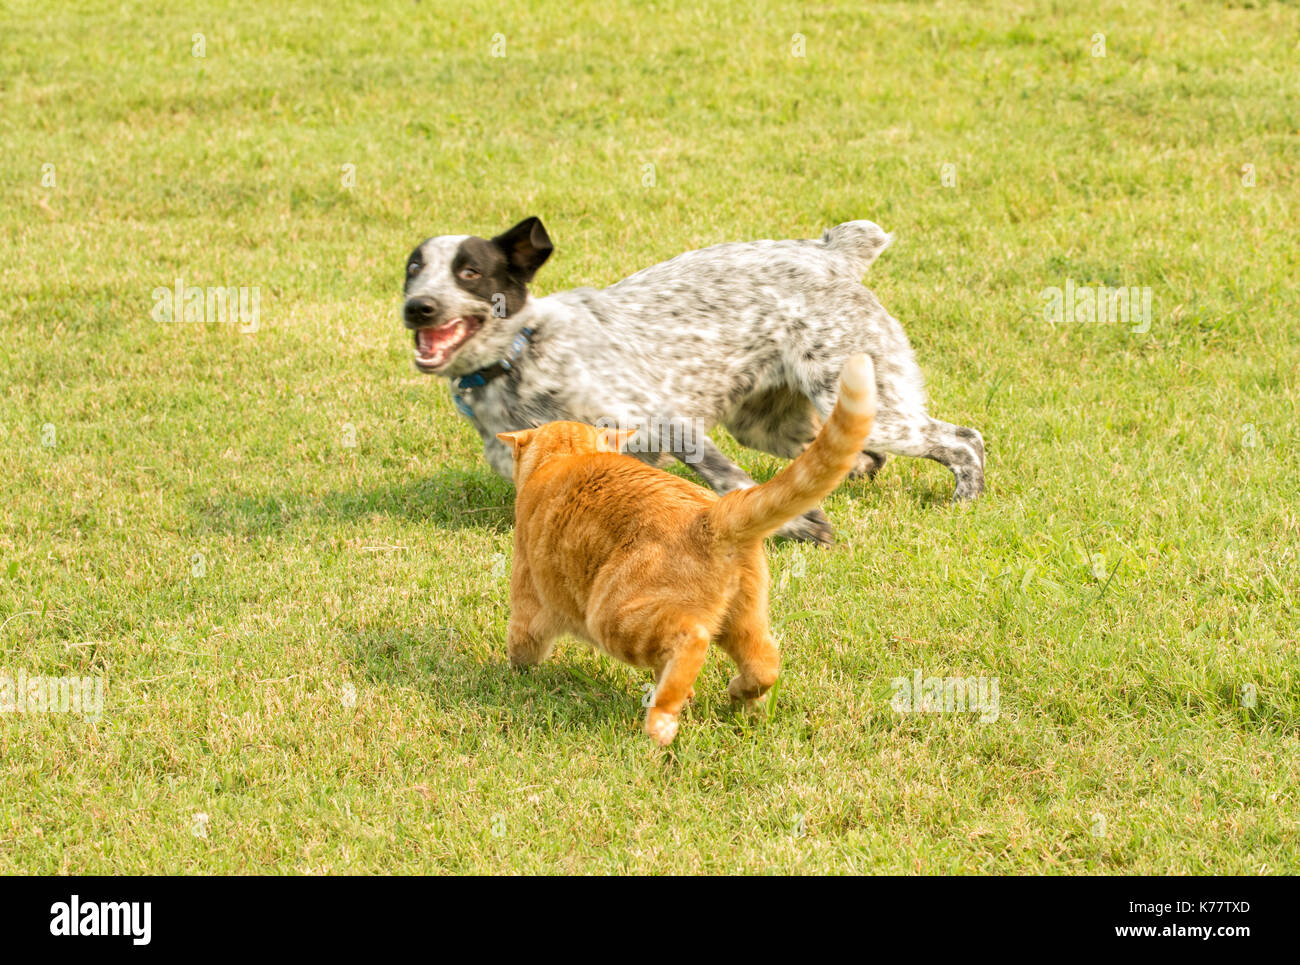 Orange tabby cat facendo un gesto minaccioso ad un bianco e nero spotted dog Foto Stock